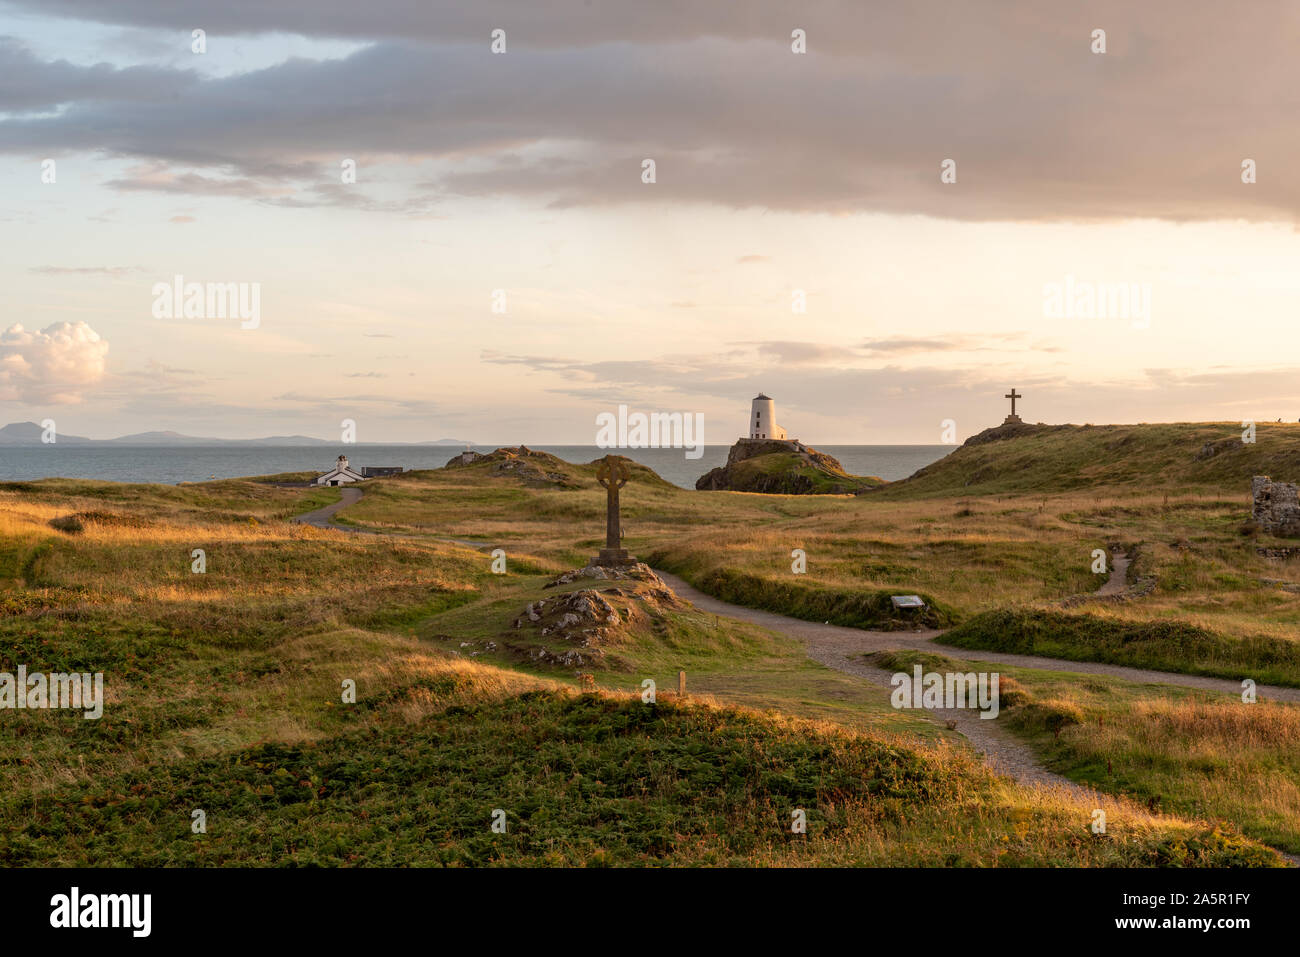 The Llanddwyn island lighthouse, Twr Mawr at Ynys Llanddwyn on Anglesey, North Wales at sunset. Stock Photo